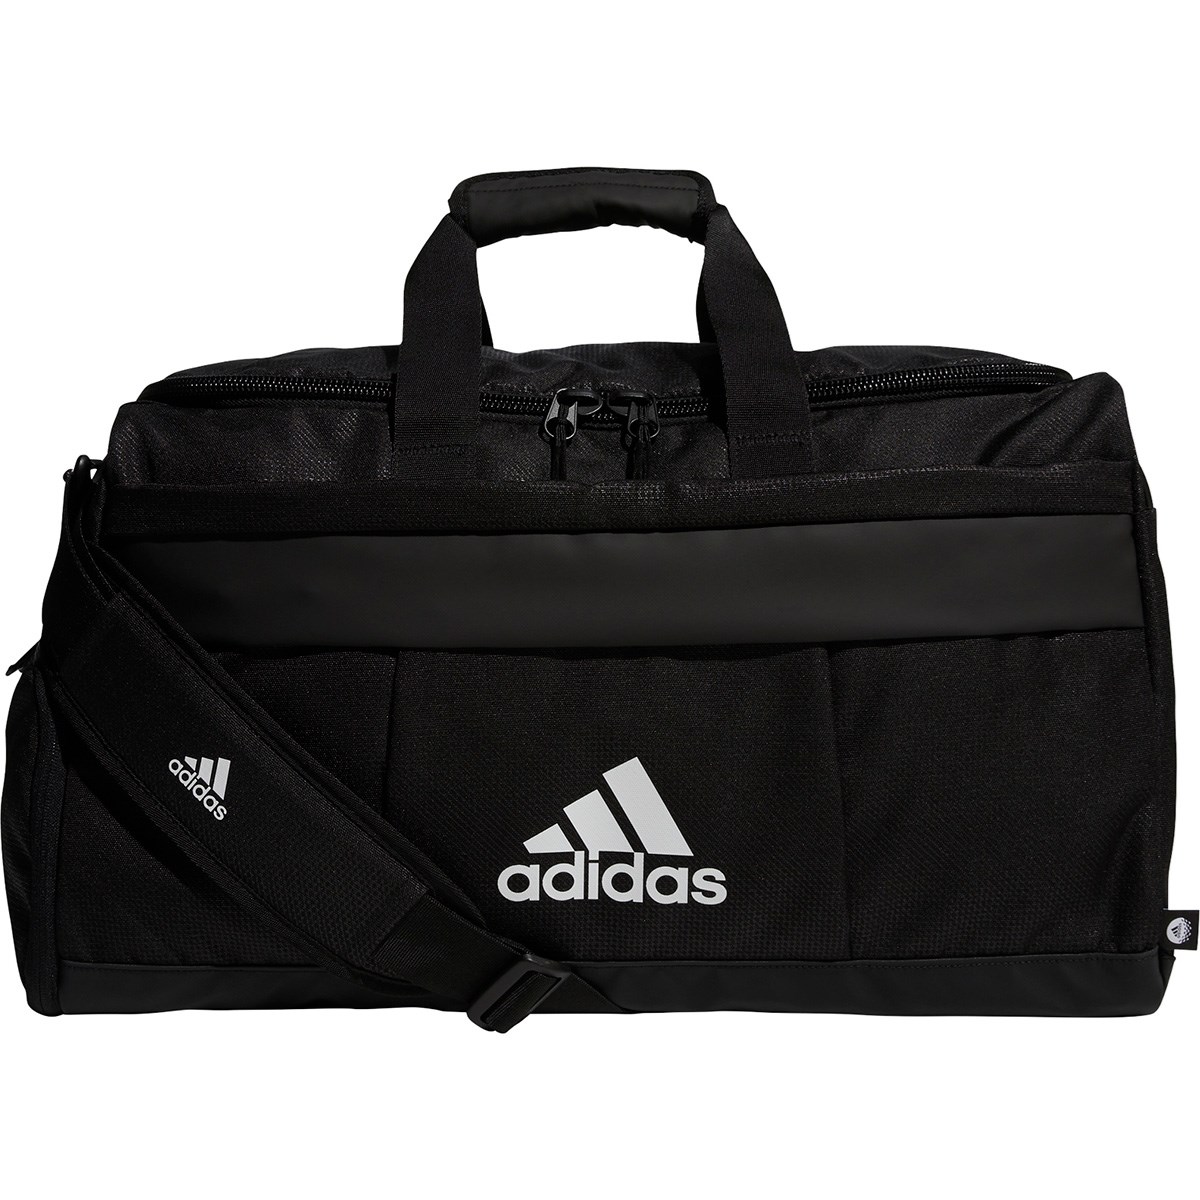 シューズポケット付き ボストンバッグ(ボストンバッグ)|Adidas(アディダス) I8793の通販 GDOゴルフショップ(0000659006)